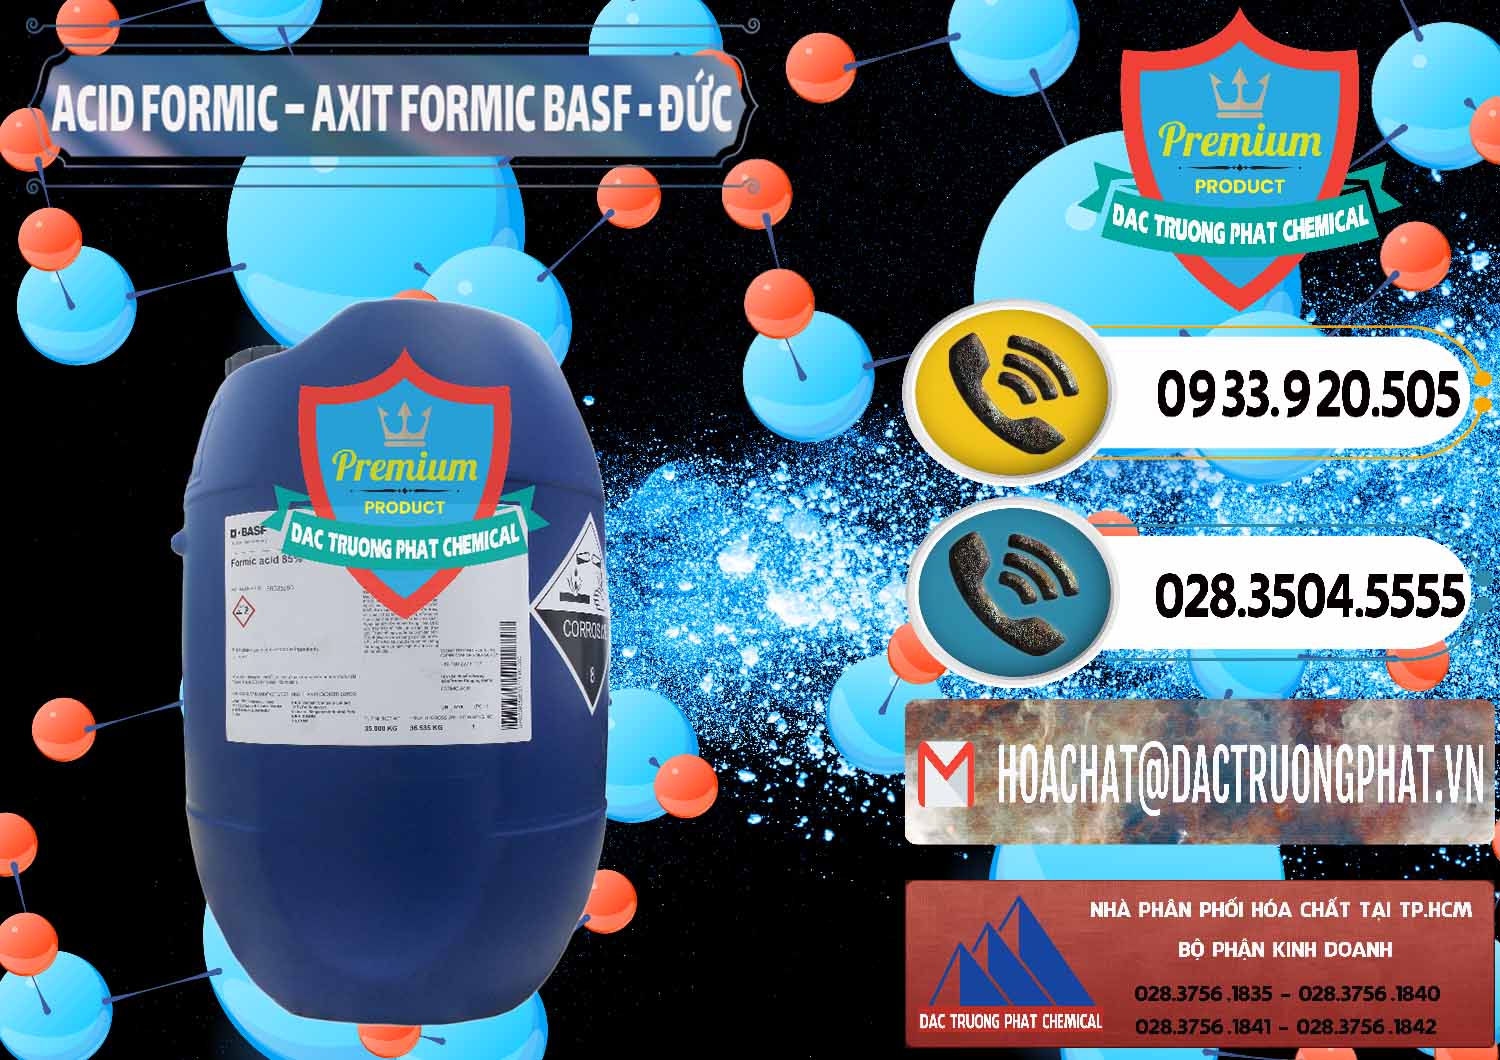 Cty chuyên bán _ cung ứng Acid Formic - Axit Formic BASF Đức Germany - 0028 - Nhà cung cấp và kinh doanh hóa chất tại TP.HCM - hoachatdetnhuom.vn